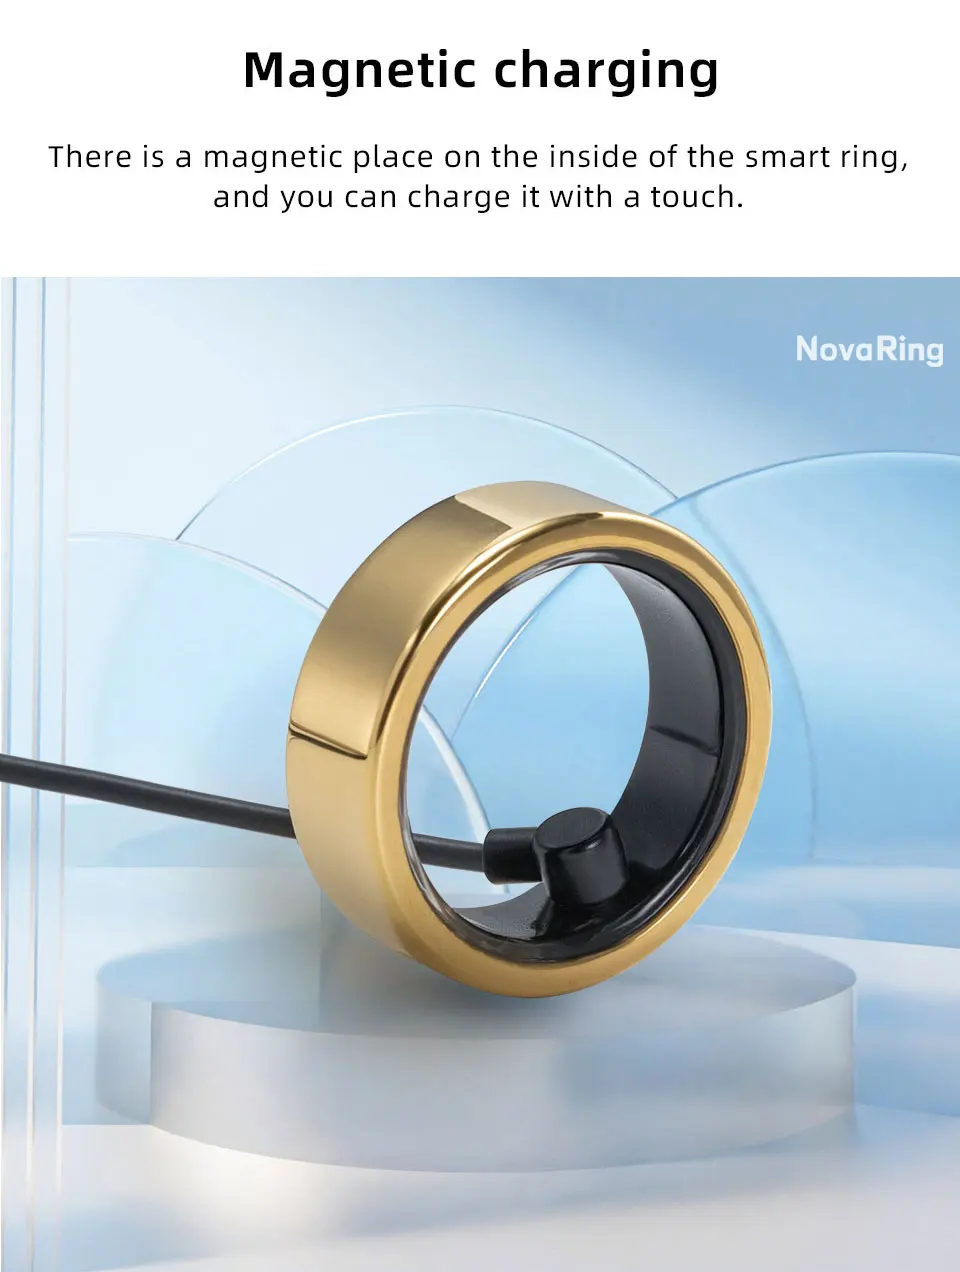 Smart-ring_12.jpg